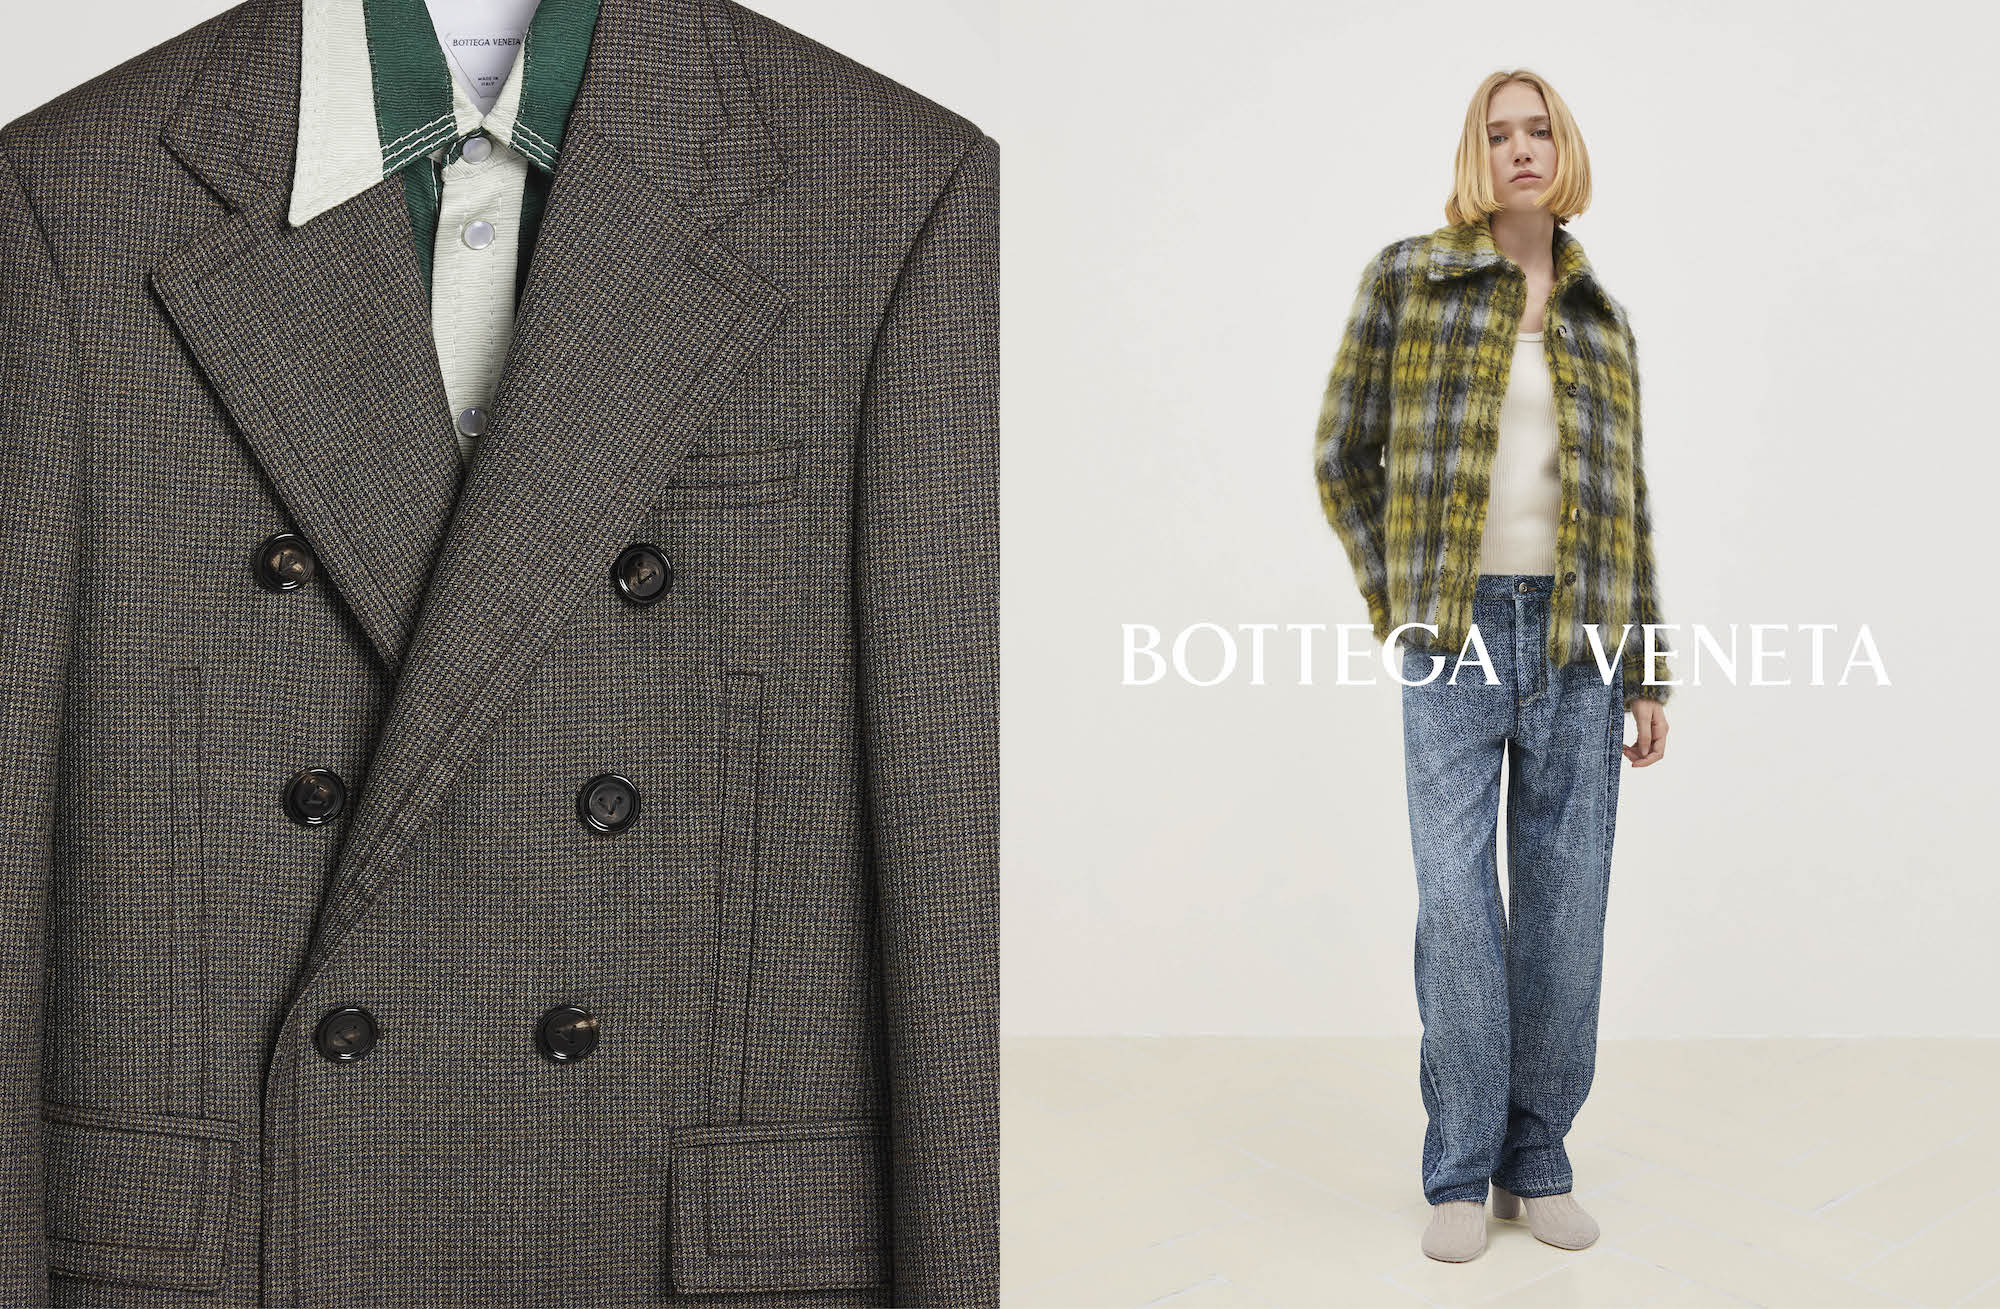 Bottega Veneta's Pre-Spring 2024 campaign